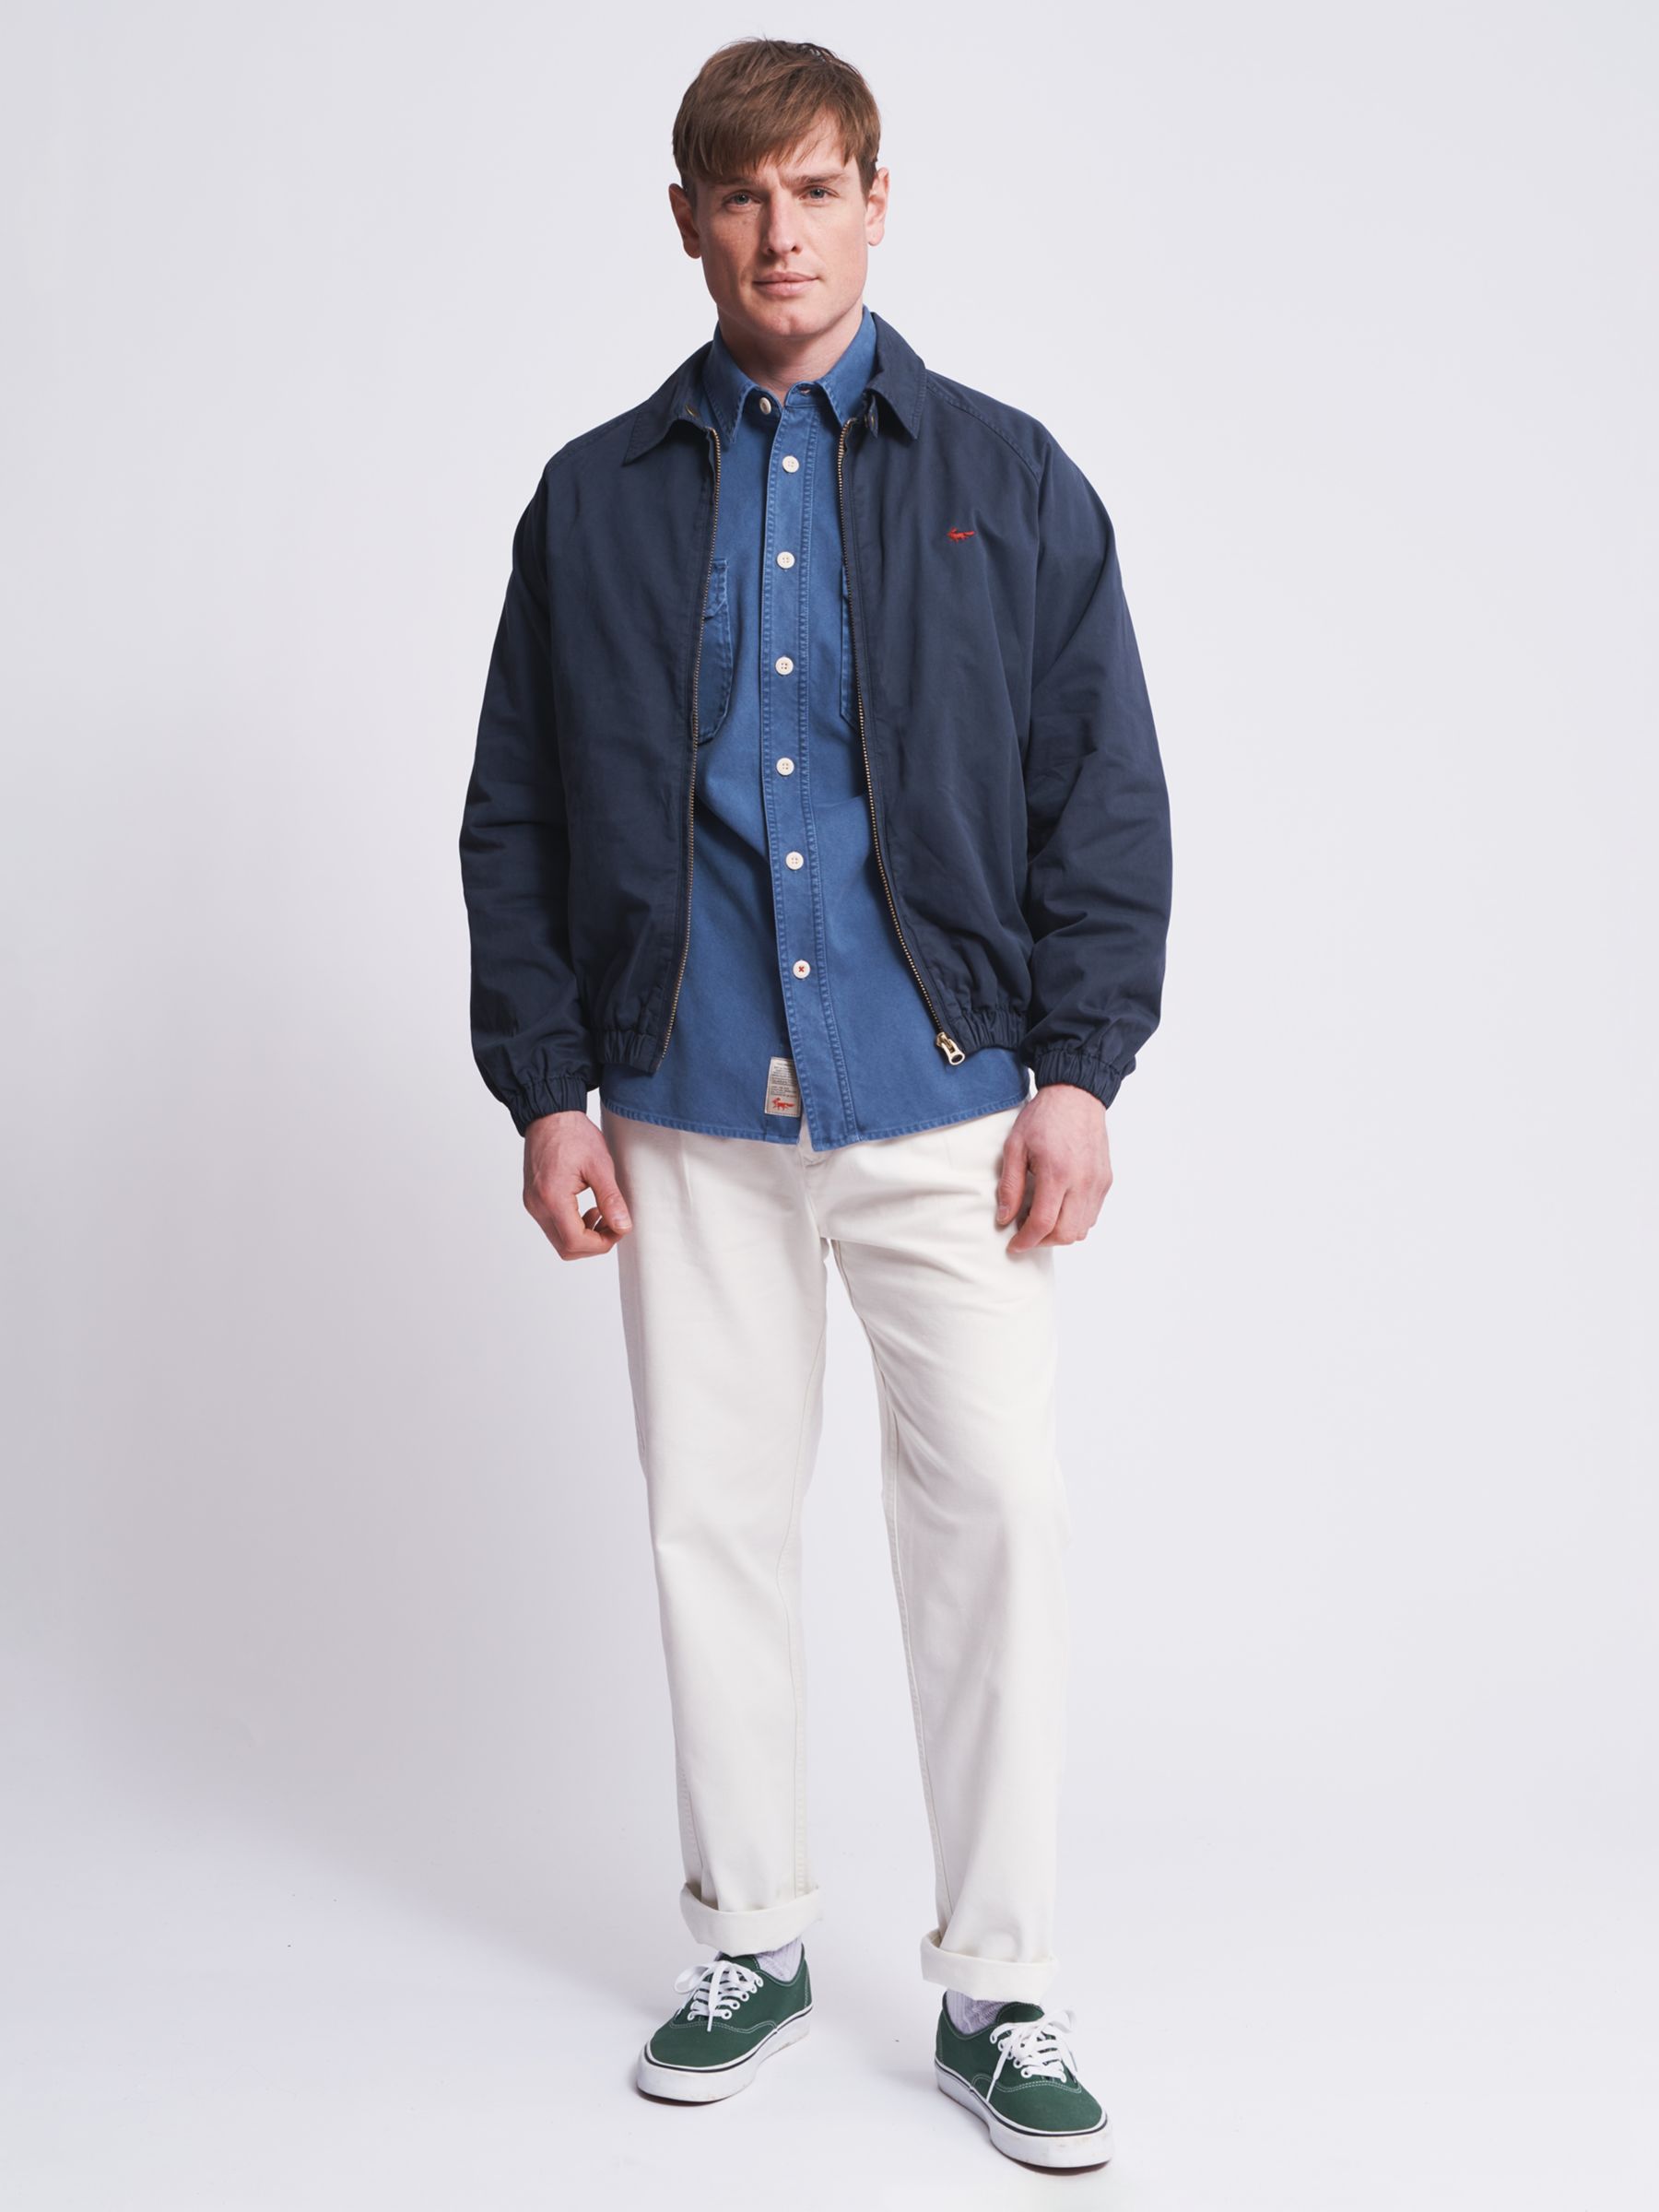 Aubin Stow Cotton Harrington Jacket, Navy at John Lewis & Partners